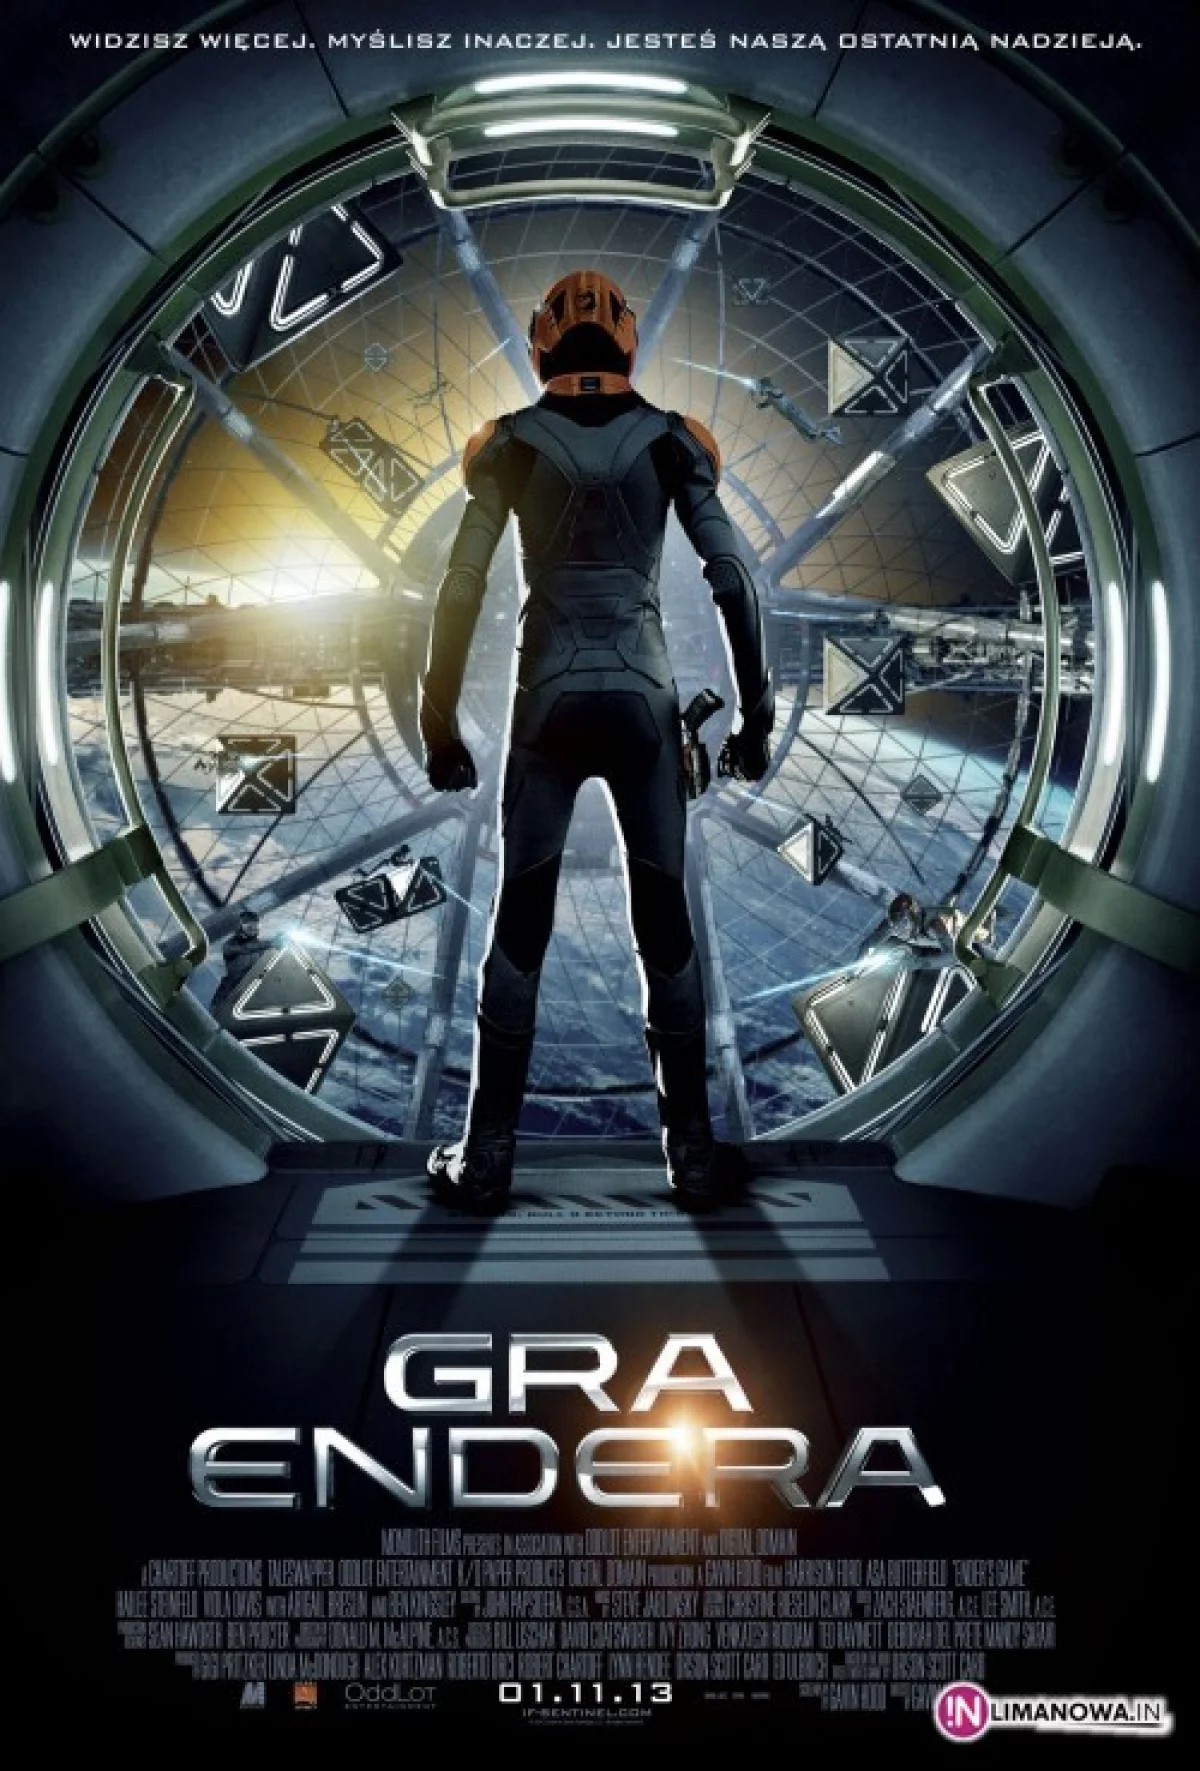 Gra Endera – w kinie Klaps od 31 października